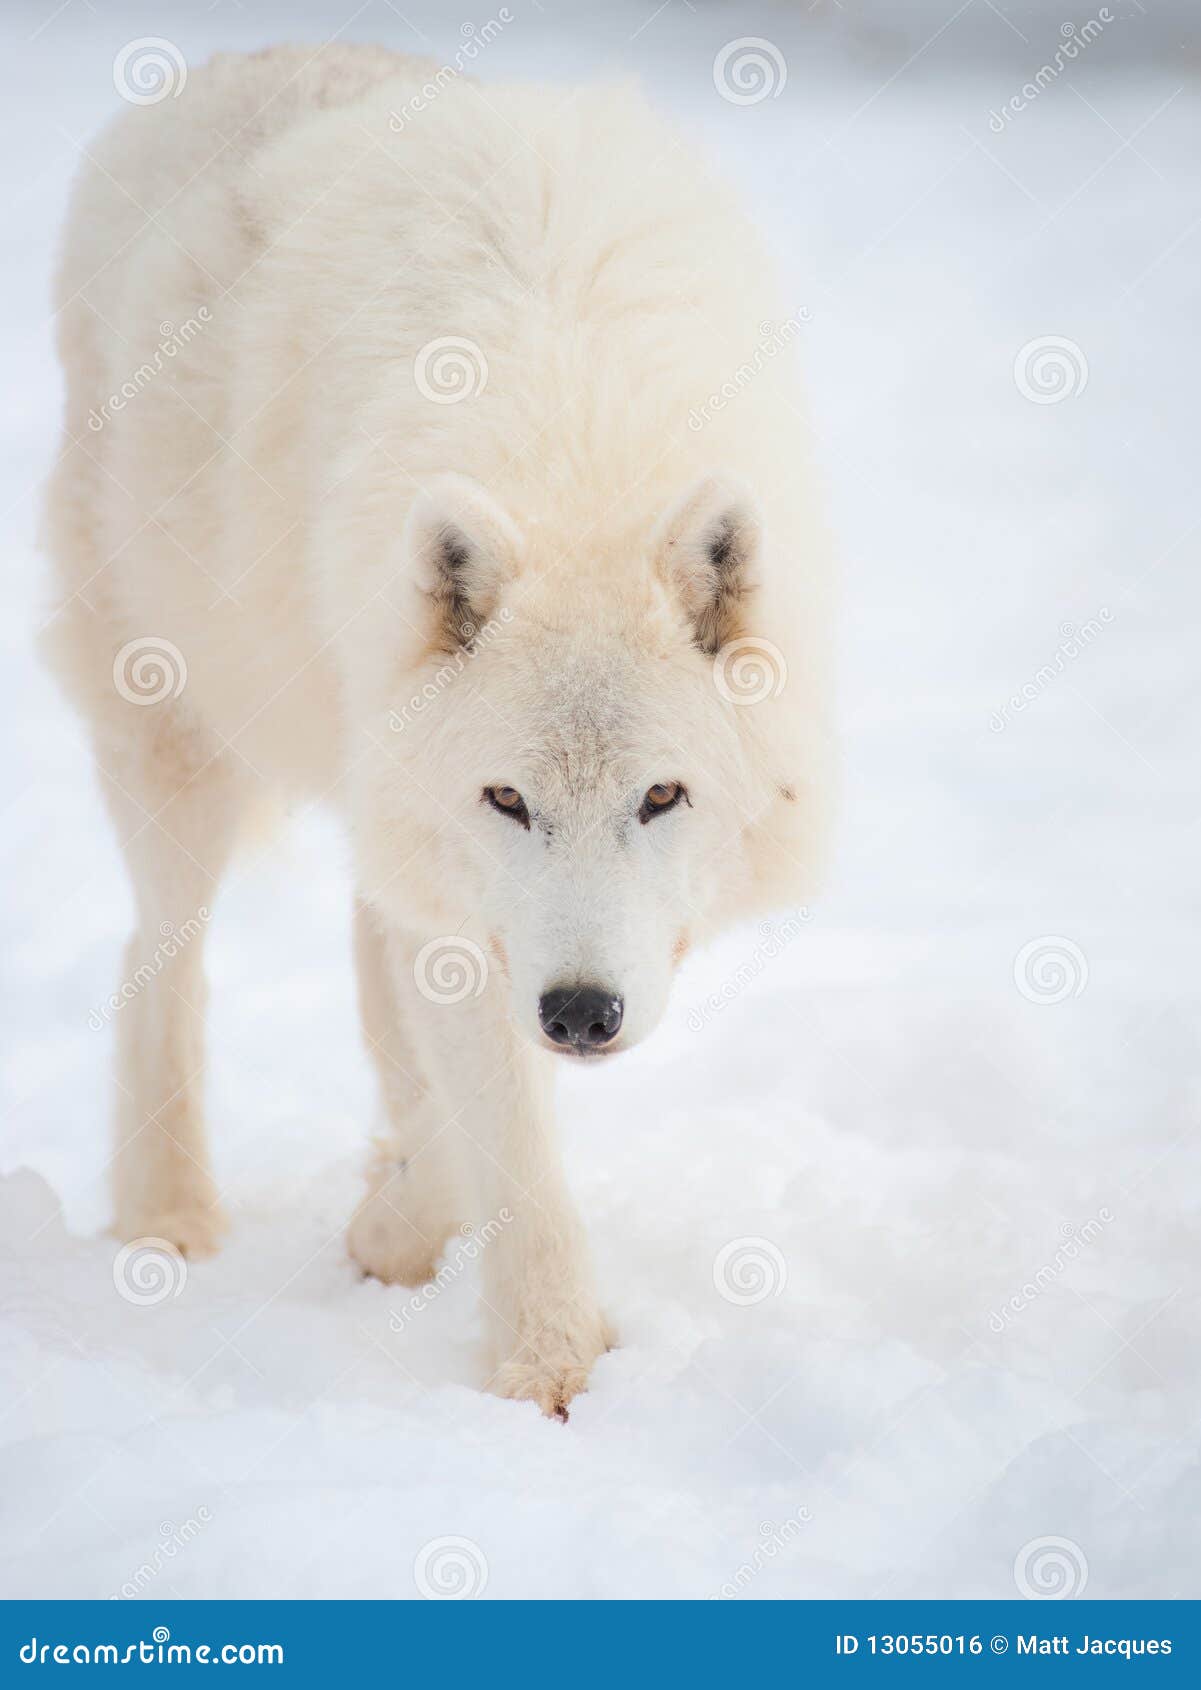 arctic wolf (canis lupus arctos) in snow.